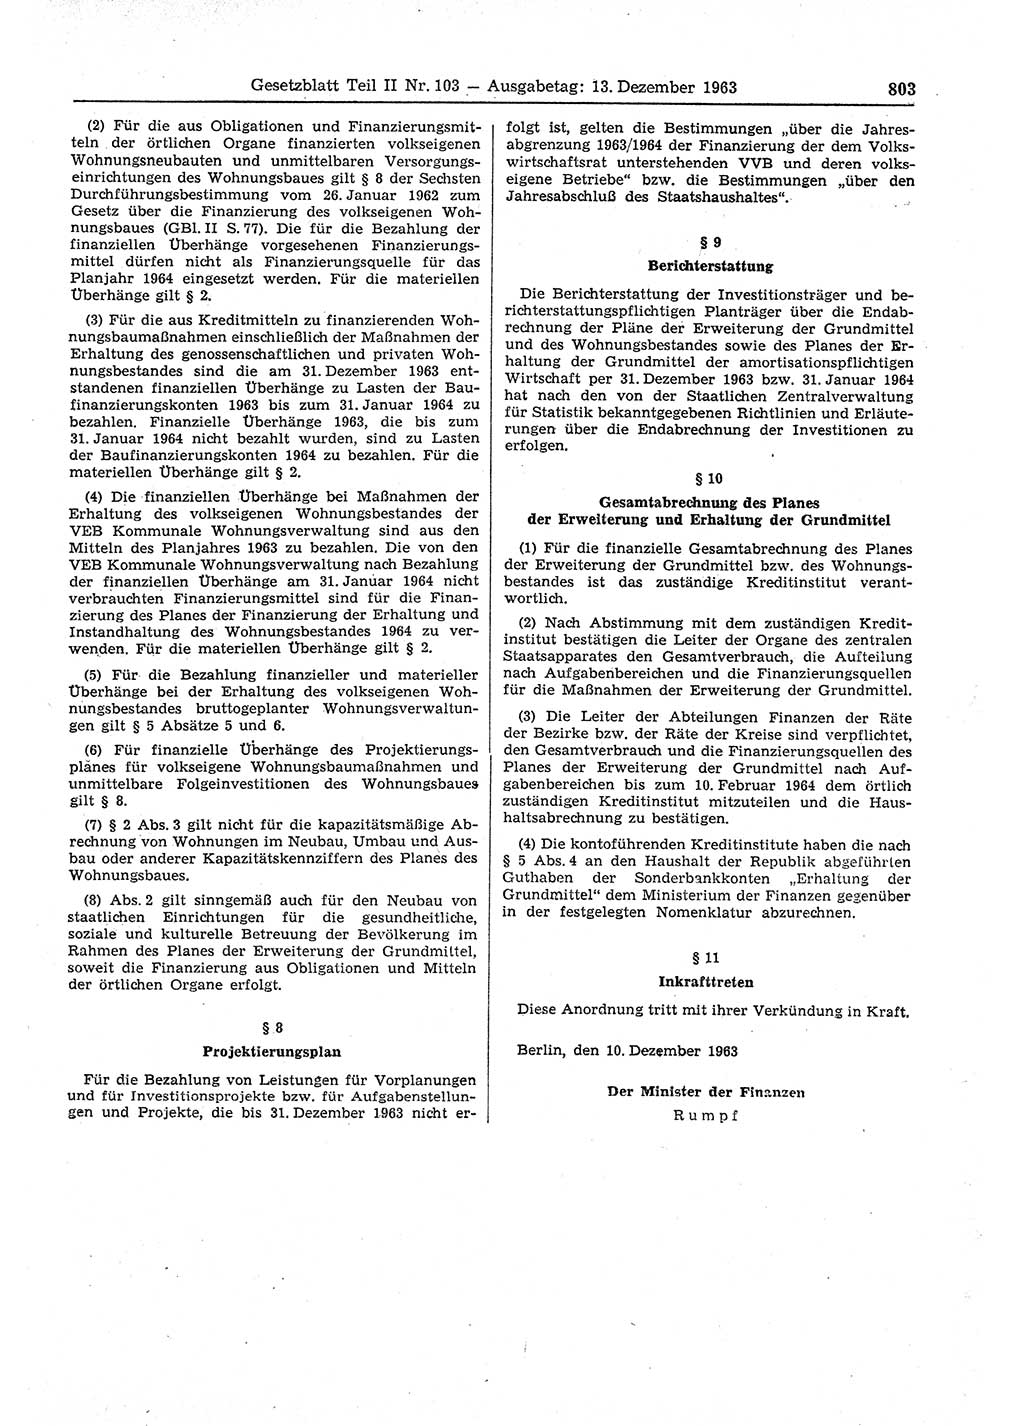 Gesetzblatt (GBl.) der Deutschen Demokratischen Republik (DDR) Teil ⅠⅠ 1963, Seite 803 (GBl. DDR ⅠⅠ 1963, S. 803)